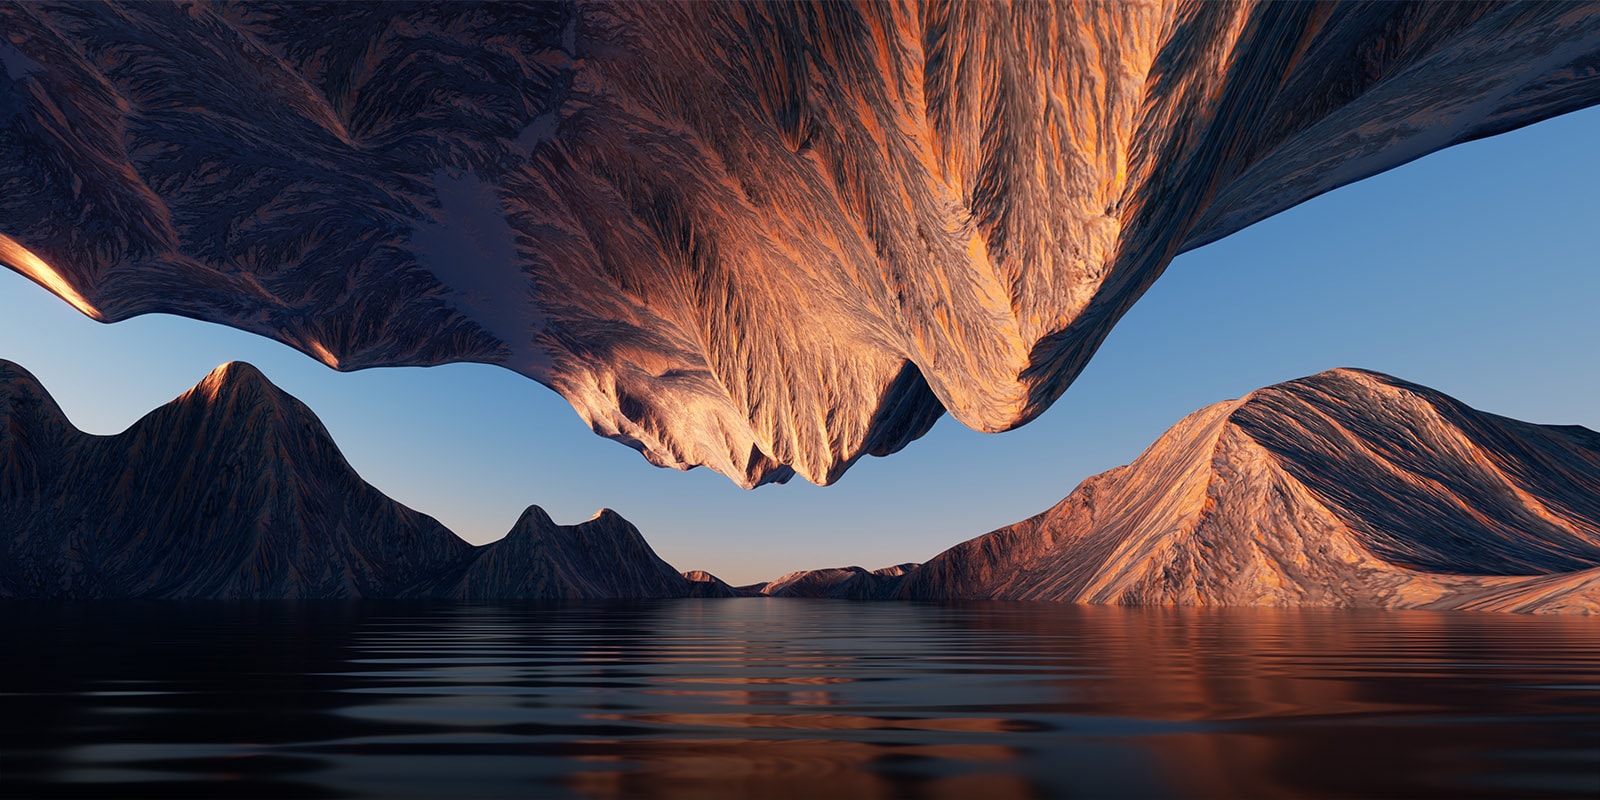 La imagen de un paisaje con unas cadenas montañosas enfrentadas desde arriba y desde abajo muestra el contraste y los detalles.